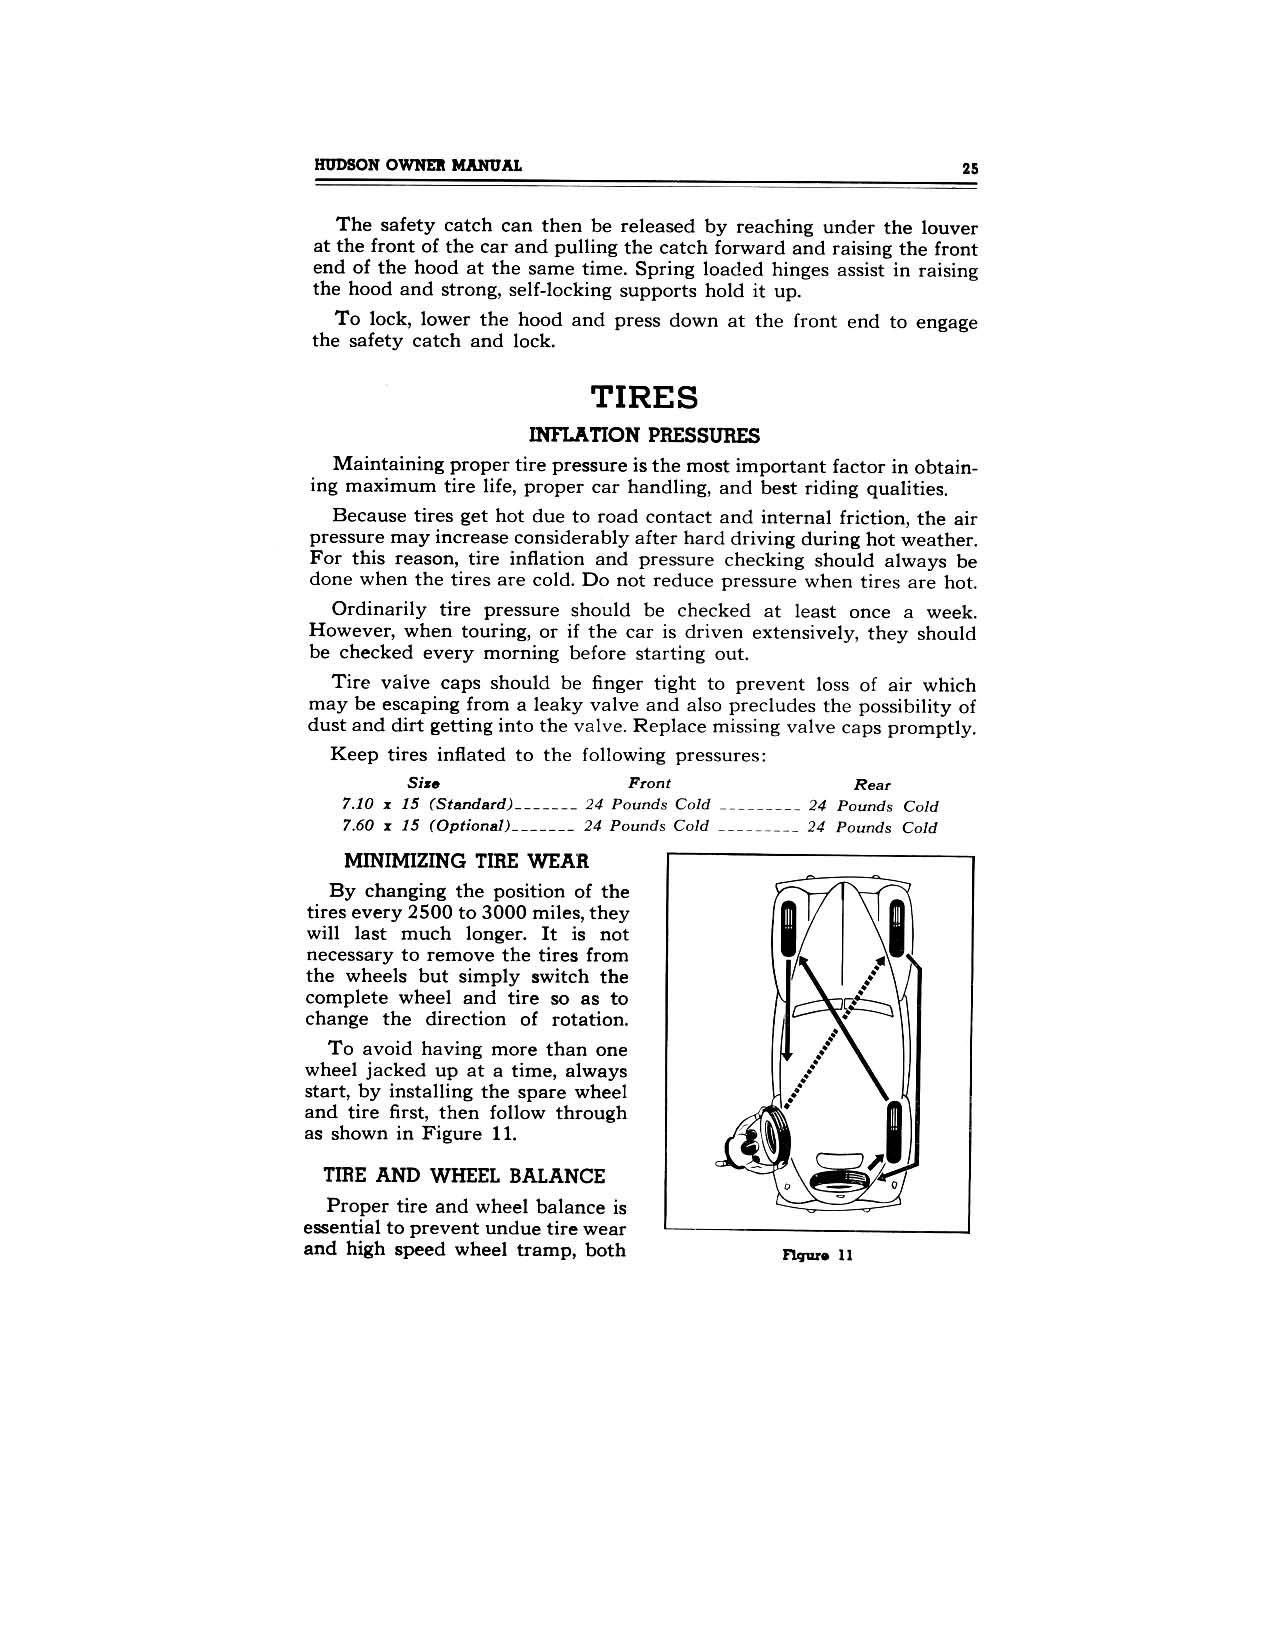 1949 Hudson Owners Manual-27